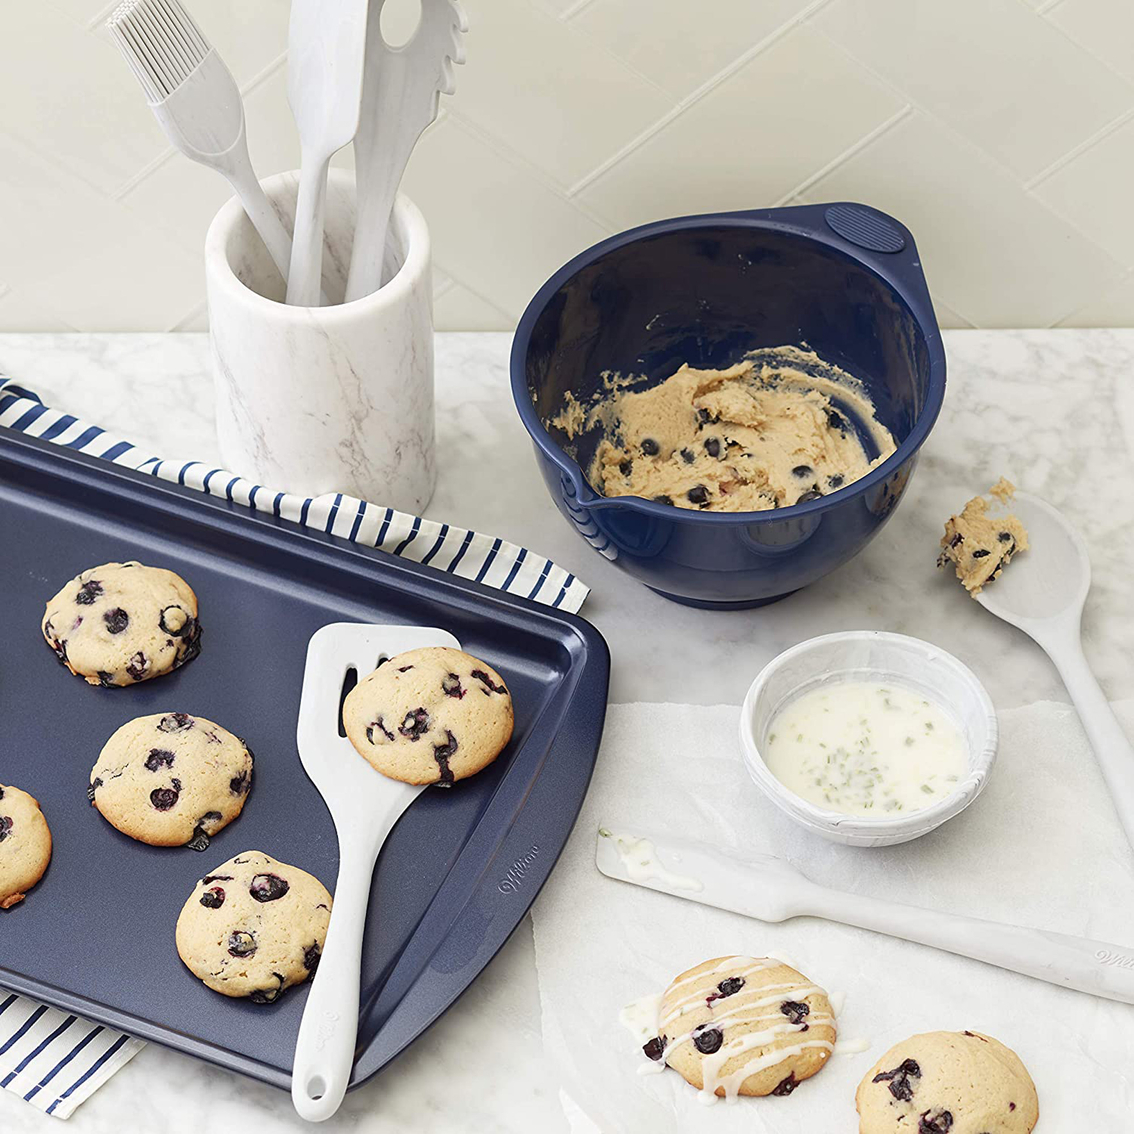 Wilton 10 X 15 Medium Cookie Sheet, Baking Pans, Household